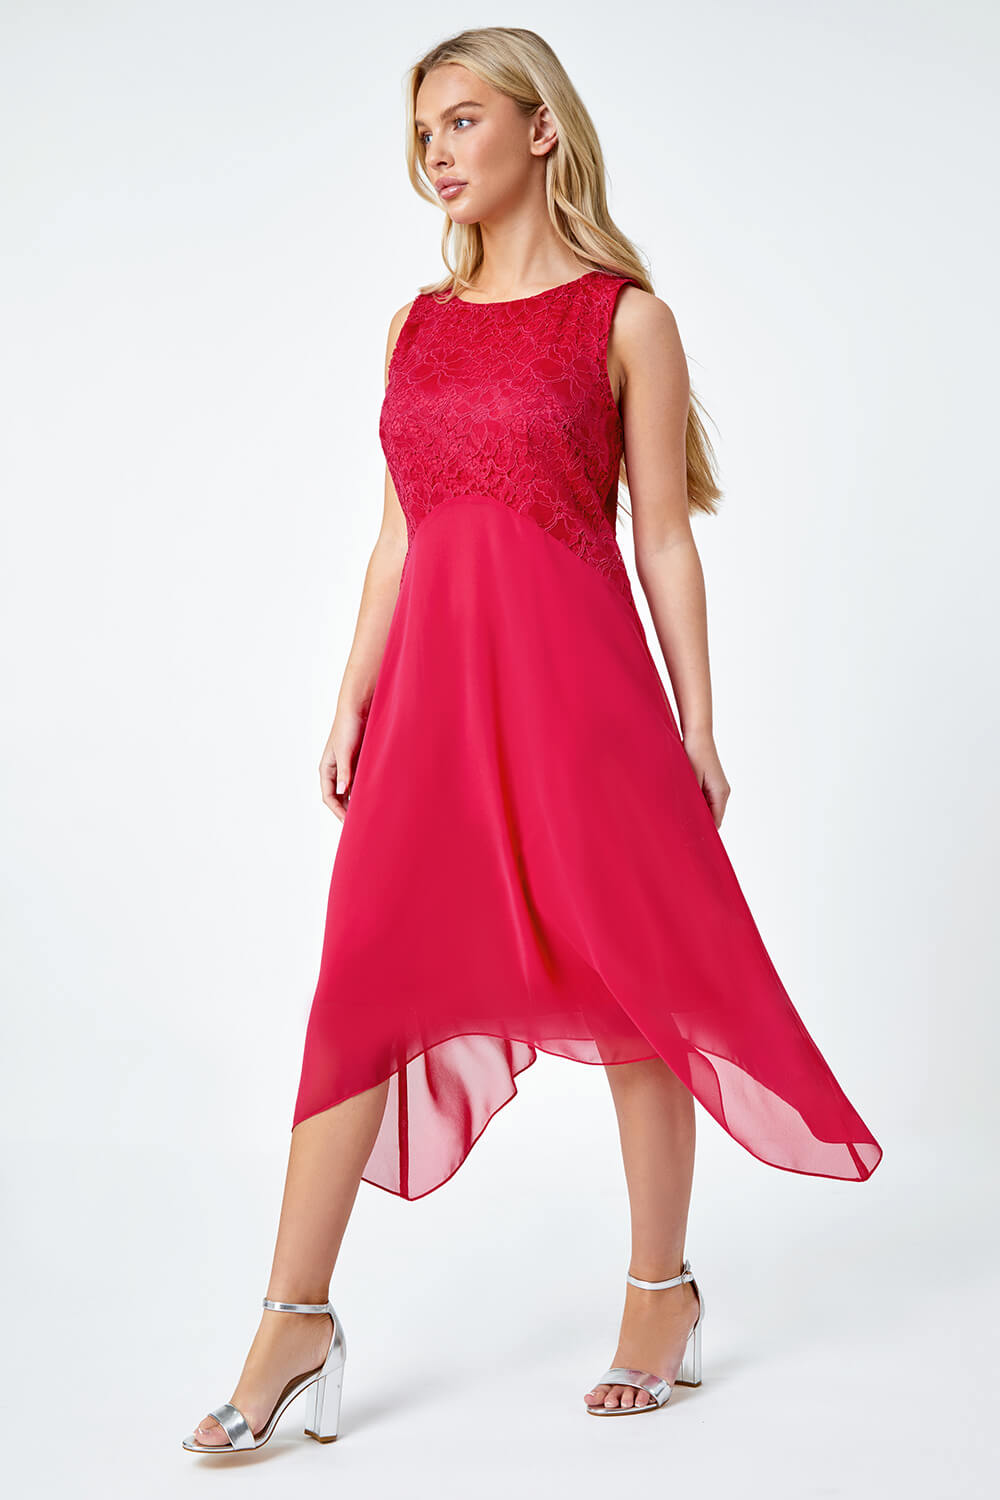 CERISE Petite Lace Bodice Dress , Image 2 of 5